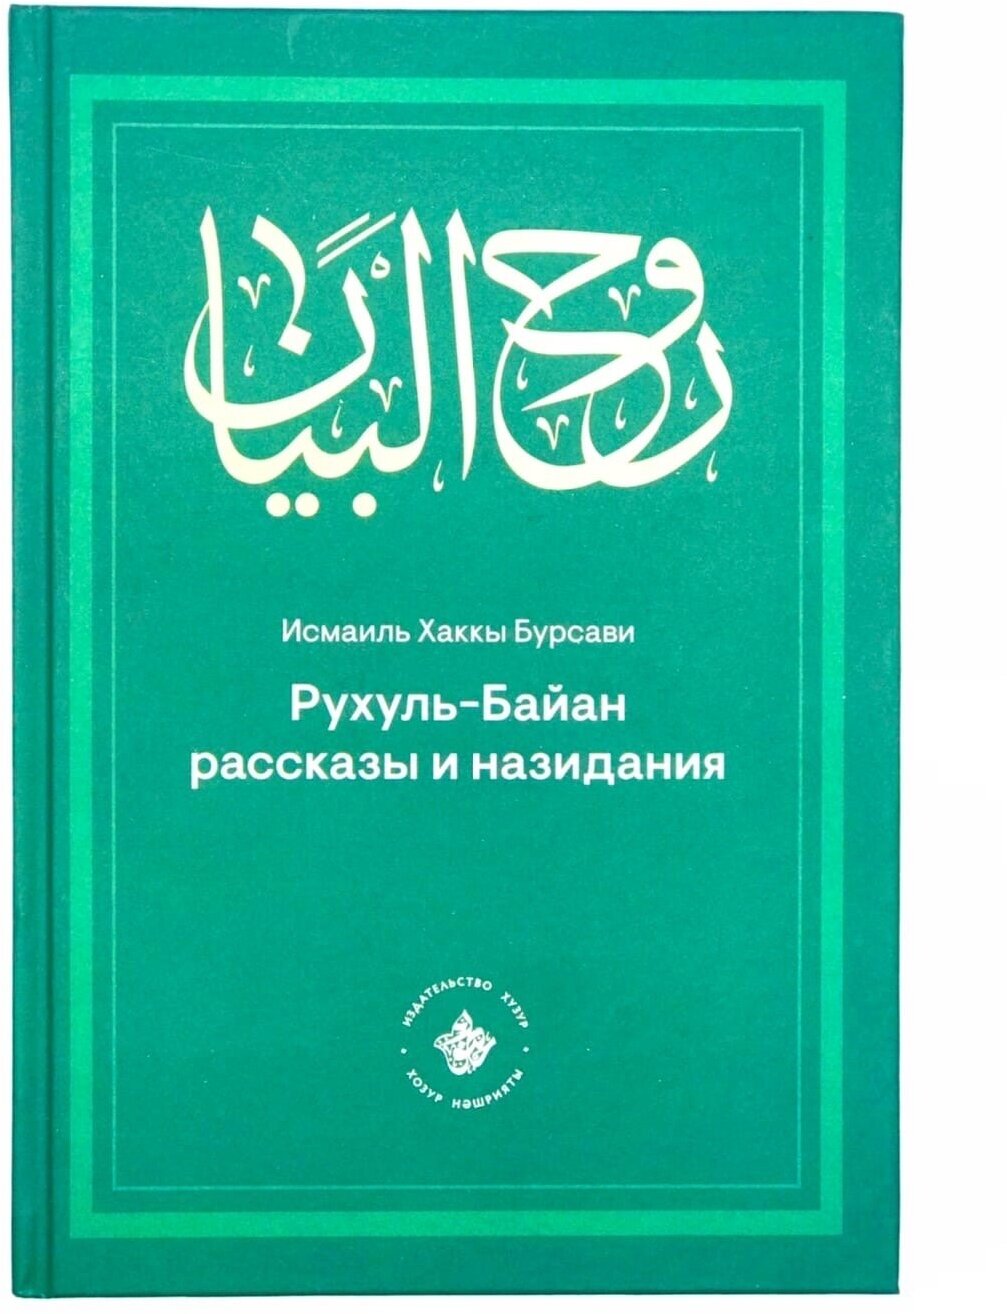 Книга "Рухуль - Байан. Рассказы и назидания", Исмаиль Хаккы Бурсави, изд. Хузур